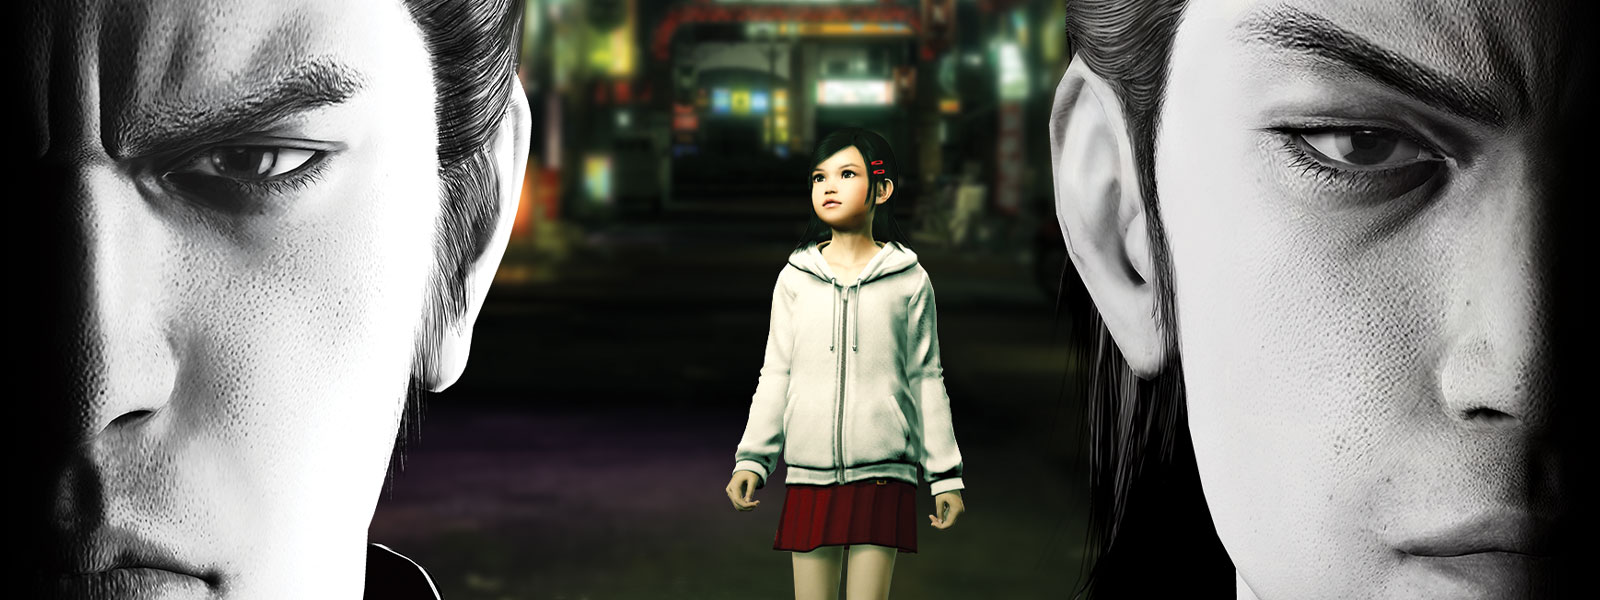 A Yakuza két szereplője komoran néz maga elé, miközben egy kislány áll a városban mögöttük.